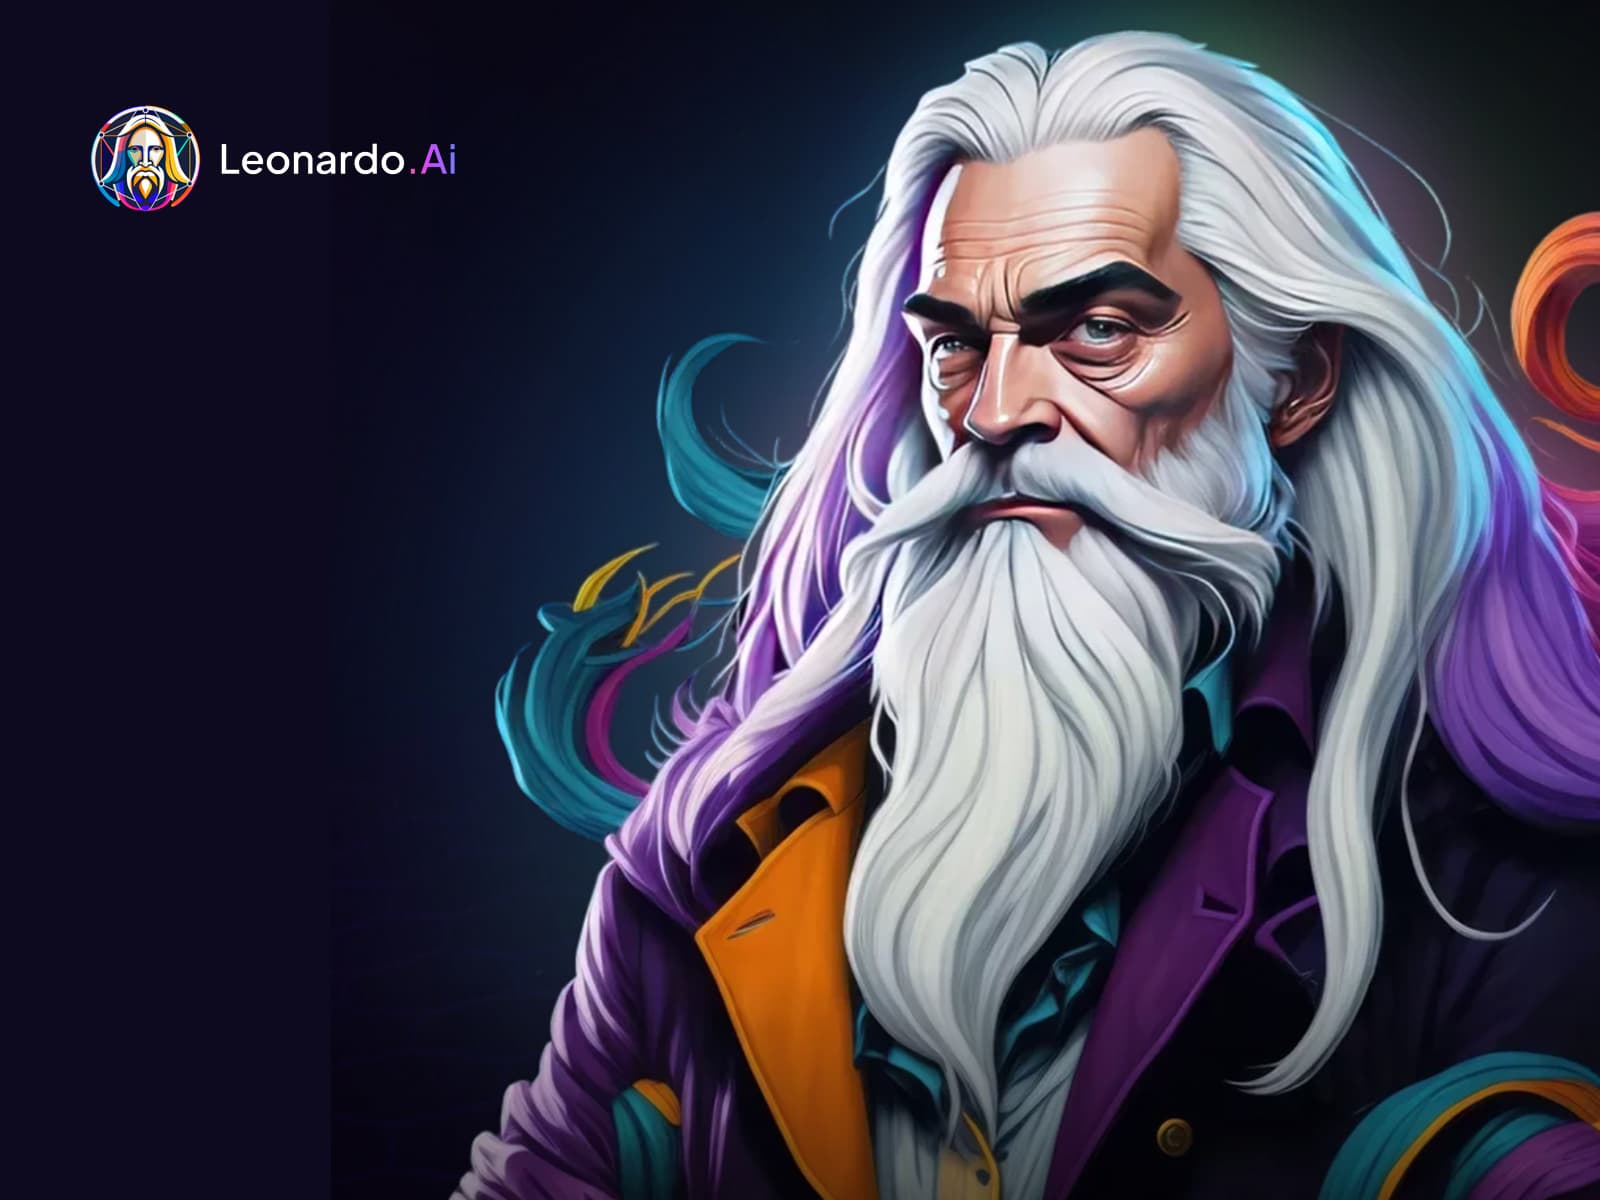 Leonardo.ai - Create AI Images and Videos